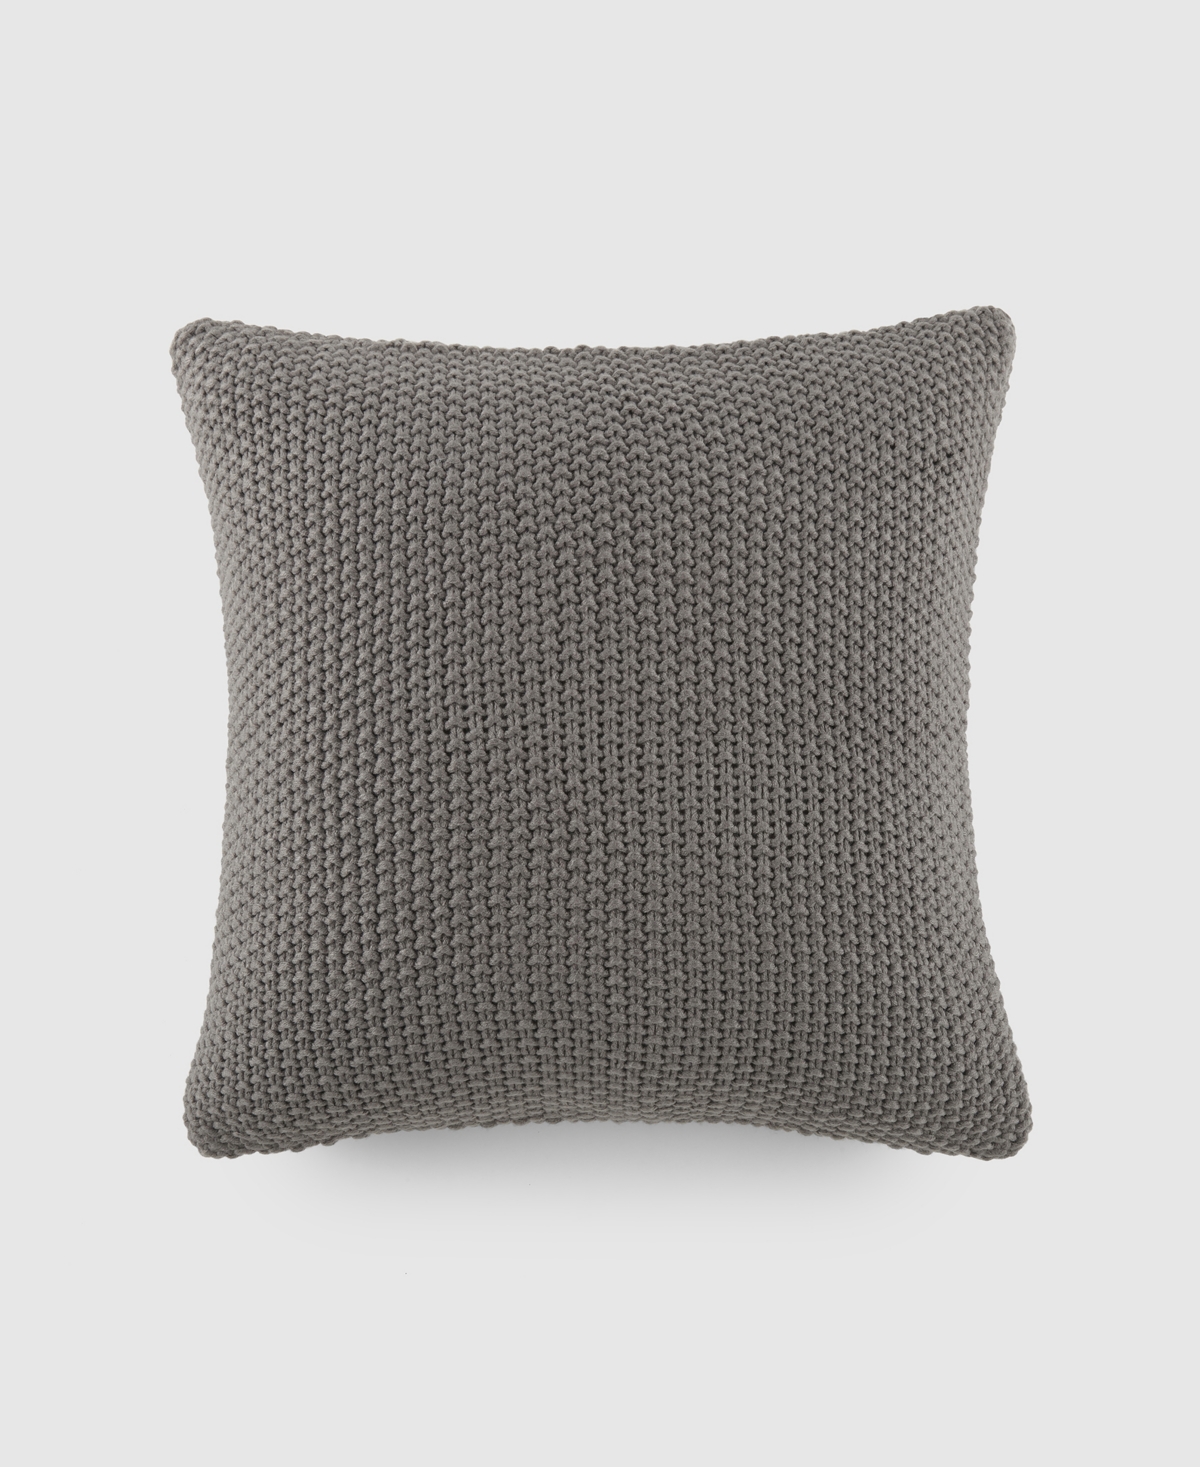 Ienjoy Home Stitch Knit Decorative Pillow, 20" X 20" In Gray